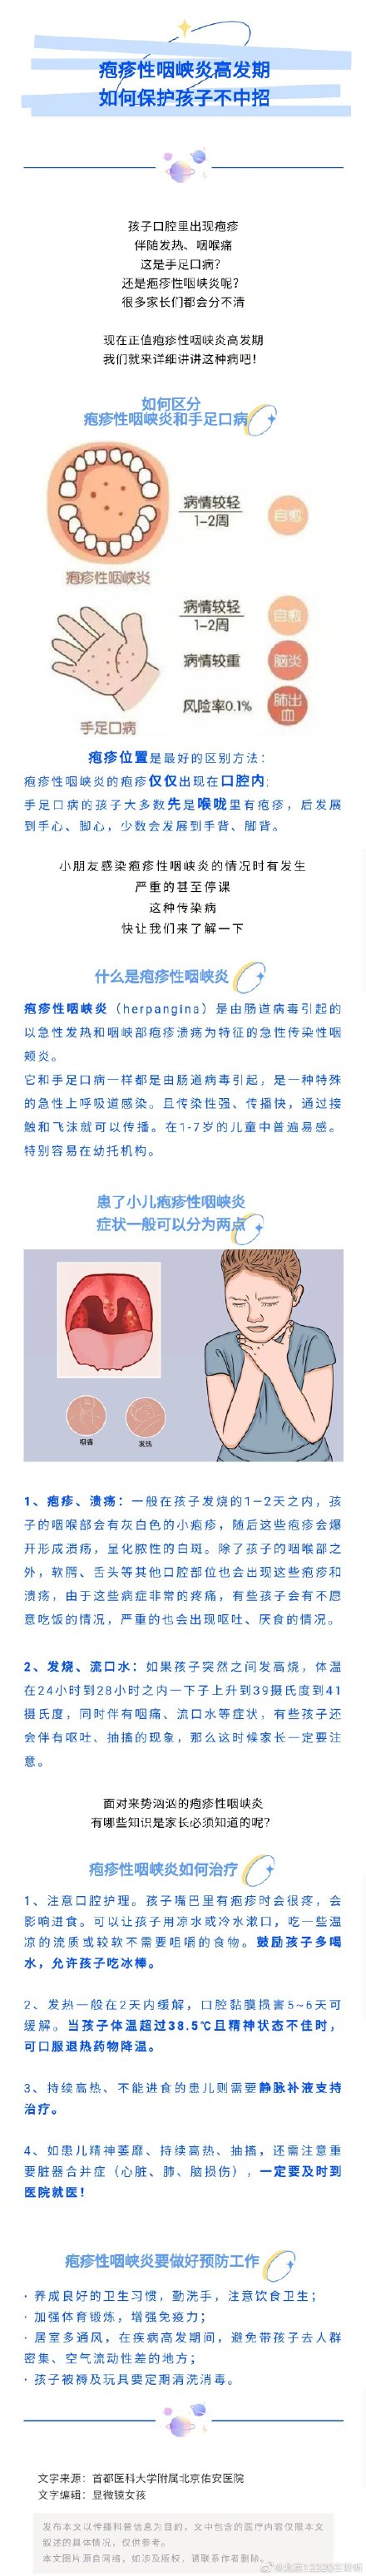 疱疹性咽峡炎高发期图片